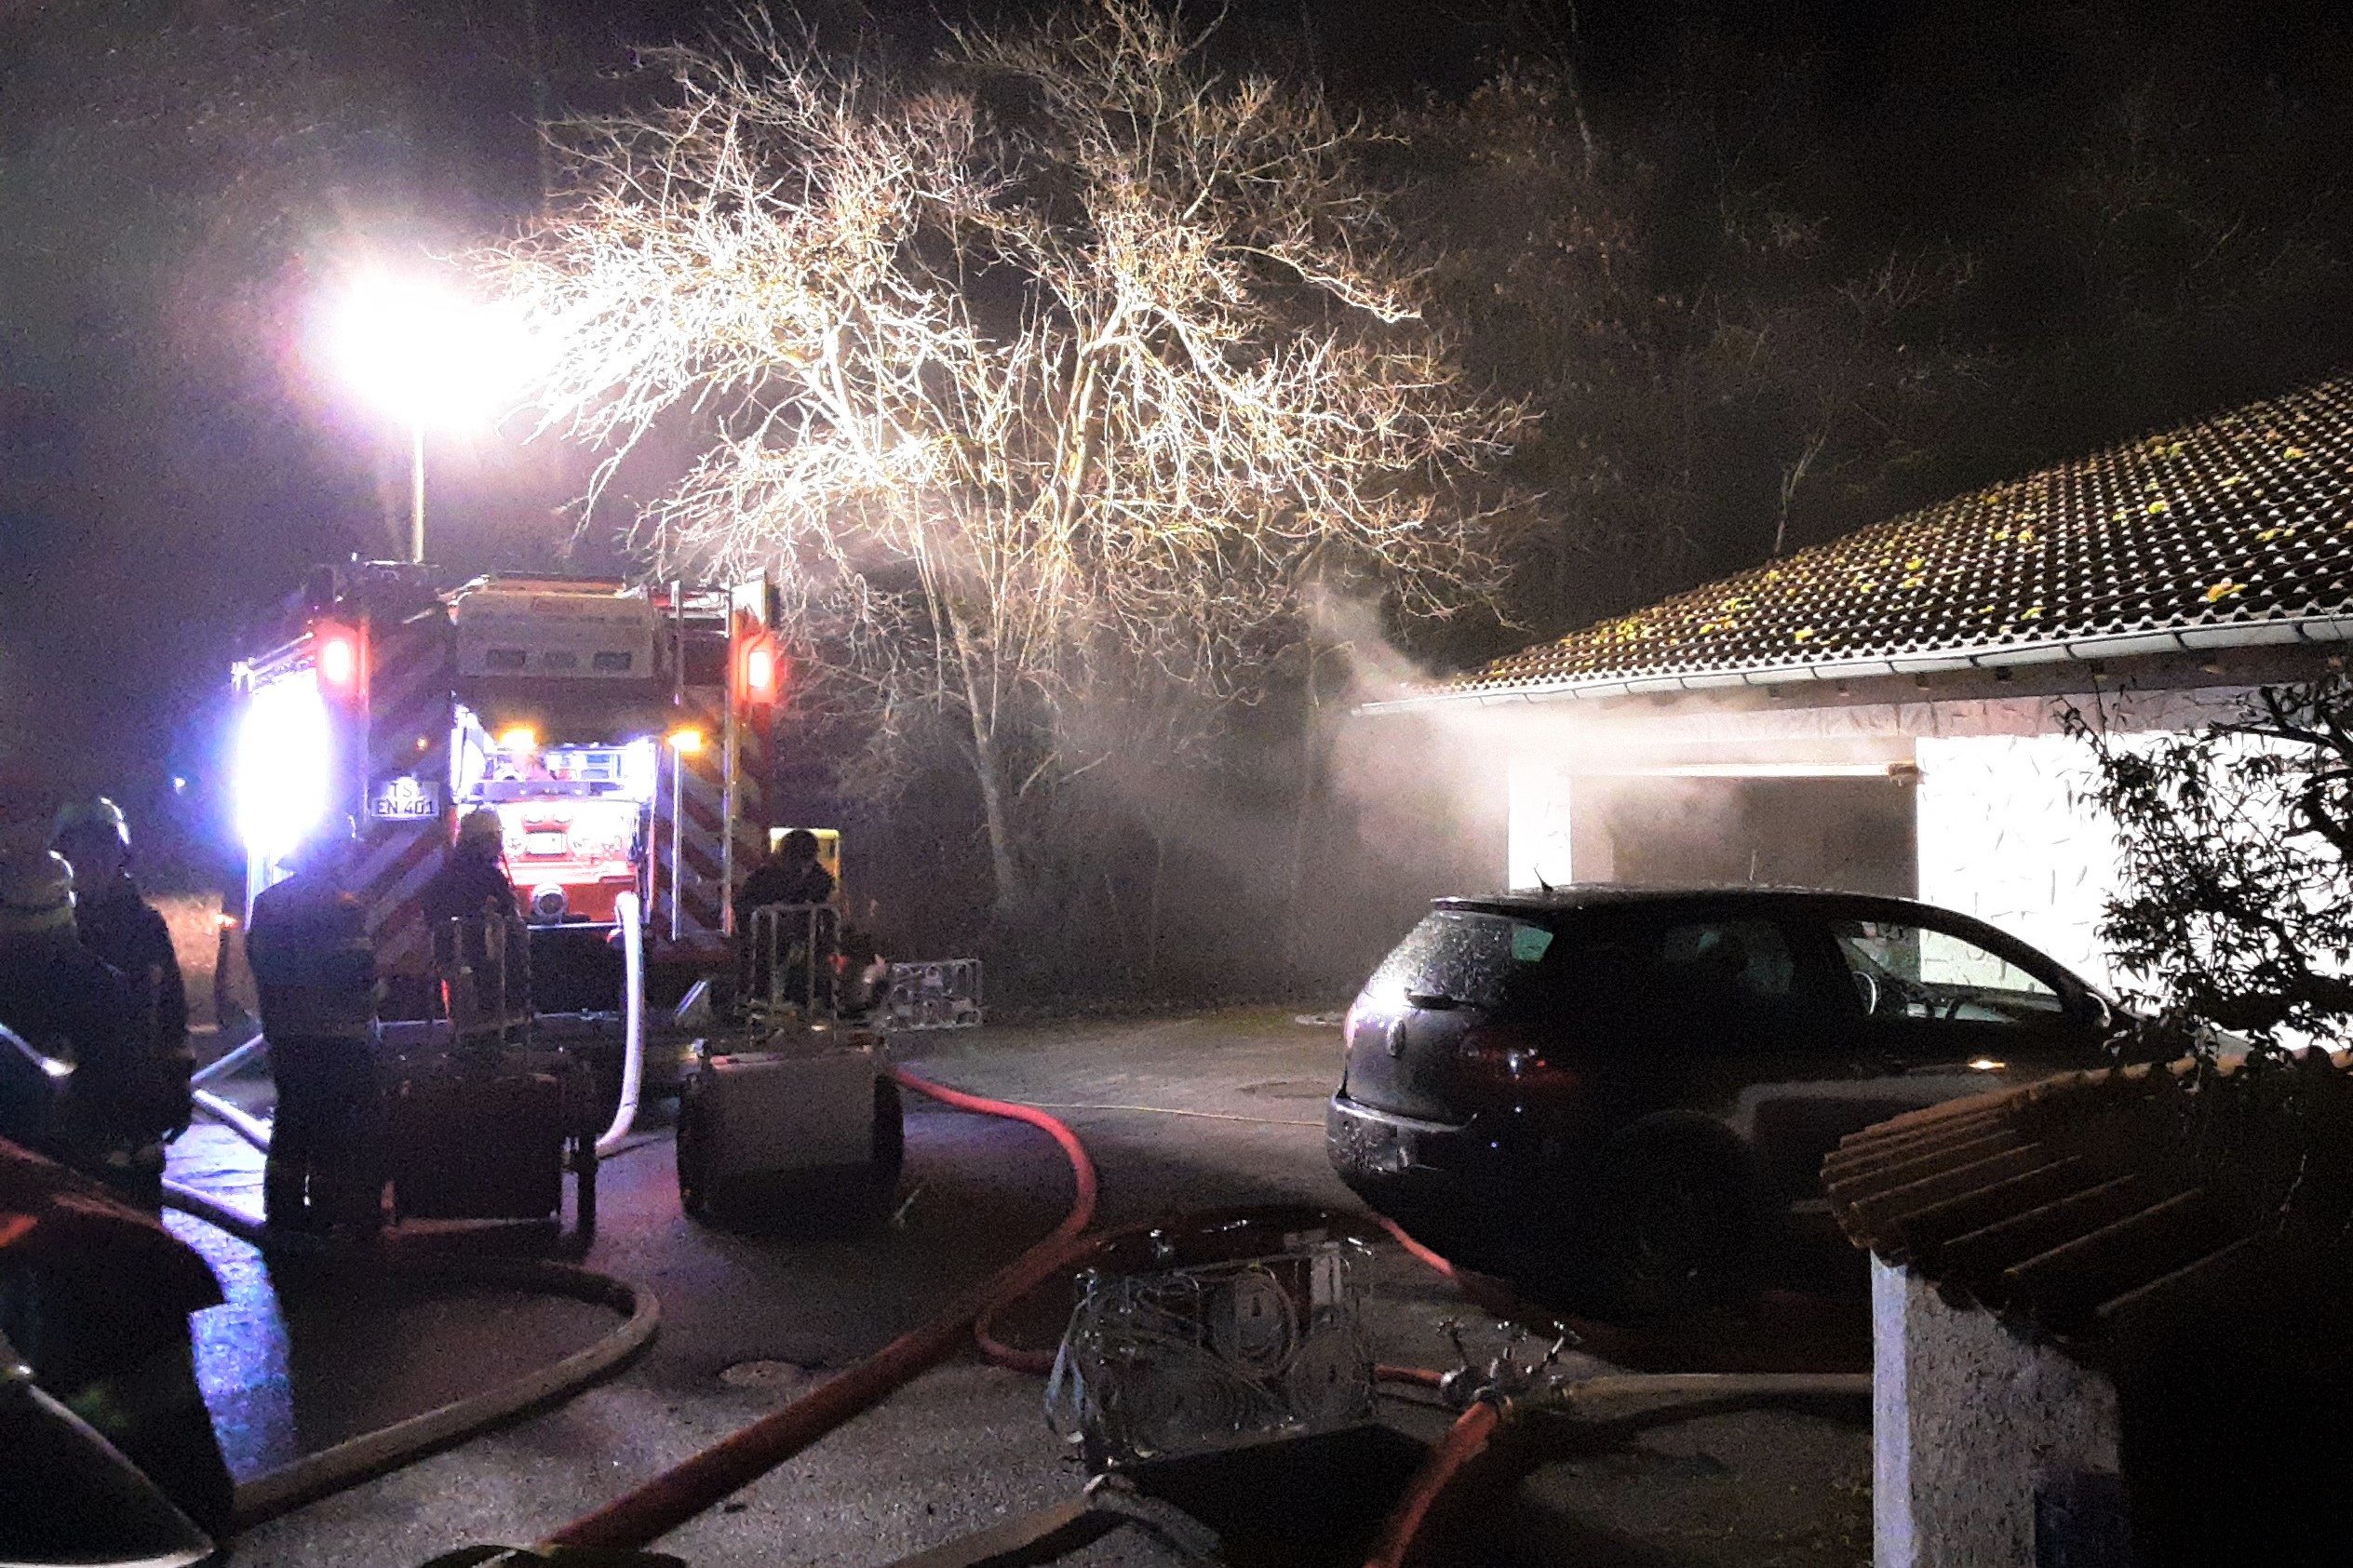 Die zwei Bewohner des Einfamilienhauses konnten sich vor dem Feuer und Brandrauch rechtzeitig in Sicherheit bringen, erlitten aber dennoch eine Rauchgasvergiftung.